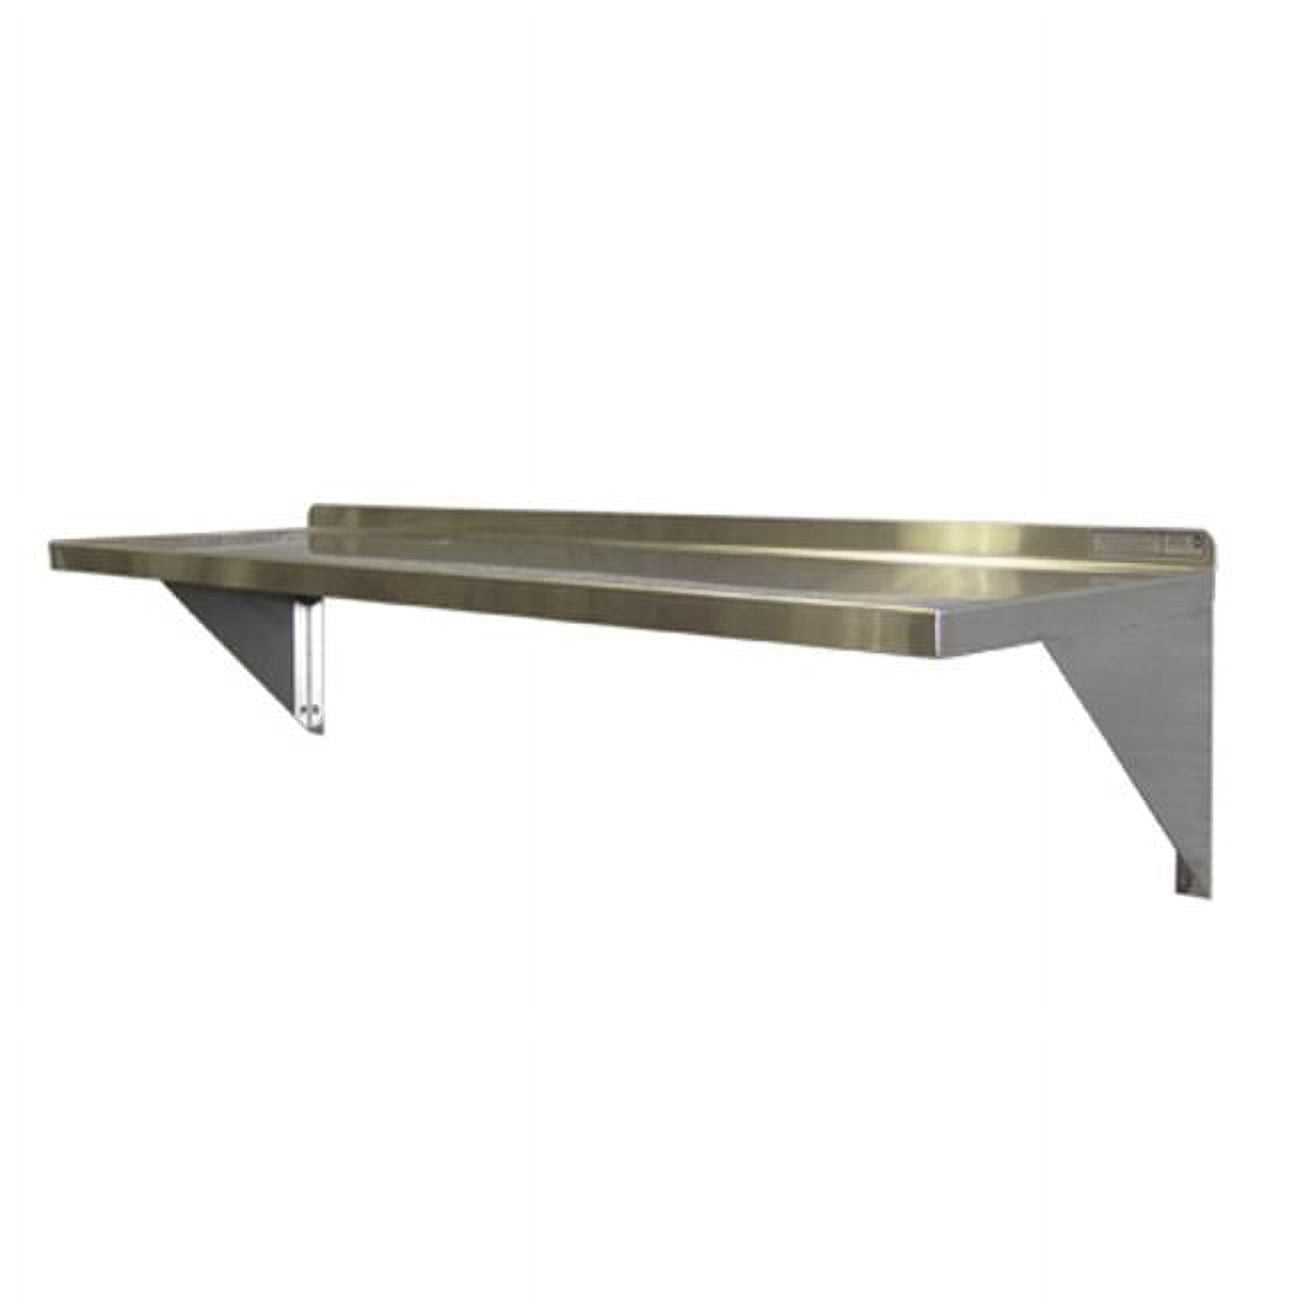 Signature metal baking dish 24x24cm - Deco, Furniture for